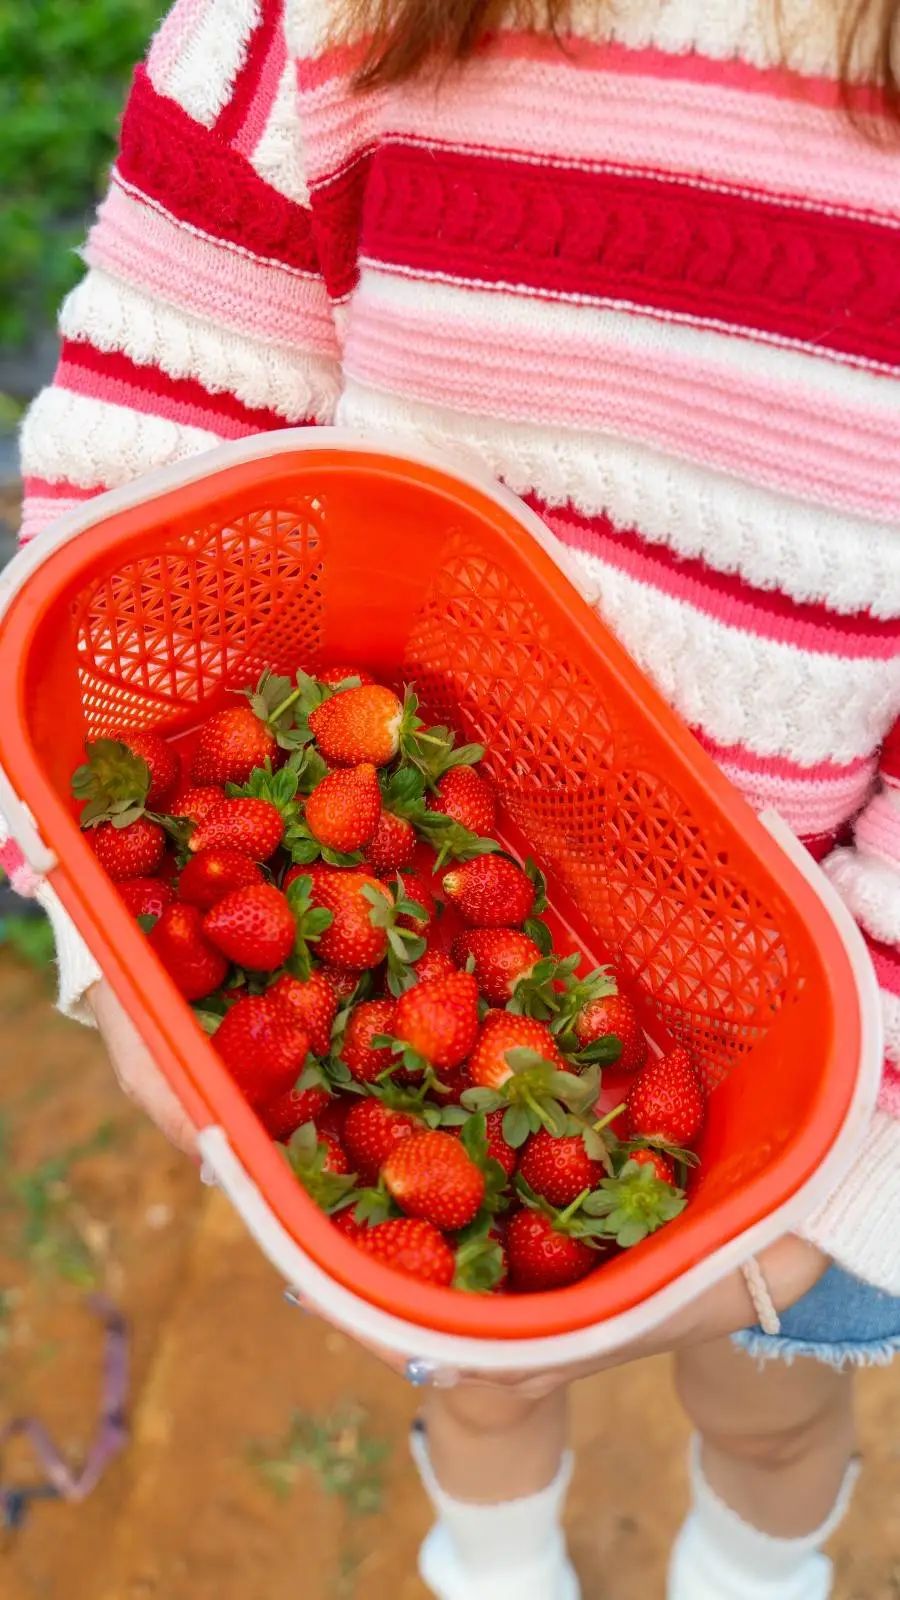 周末节假日通用！有效期到明年3月底！26.9元罗田生态草莓园：2大2小草莓采摘票，可带走1斤奶油草莓